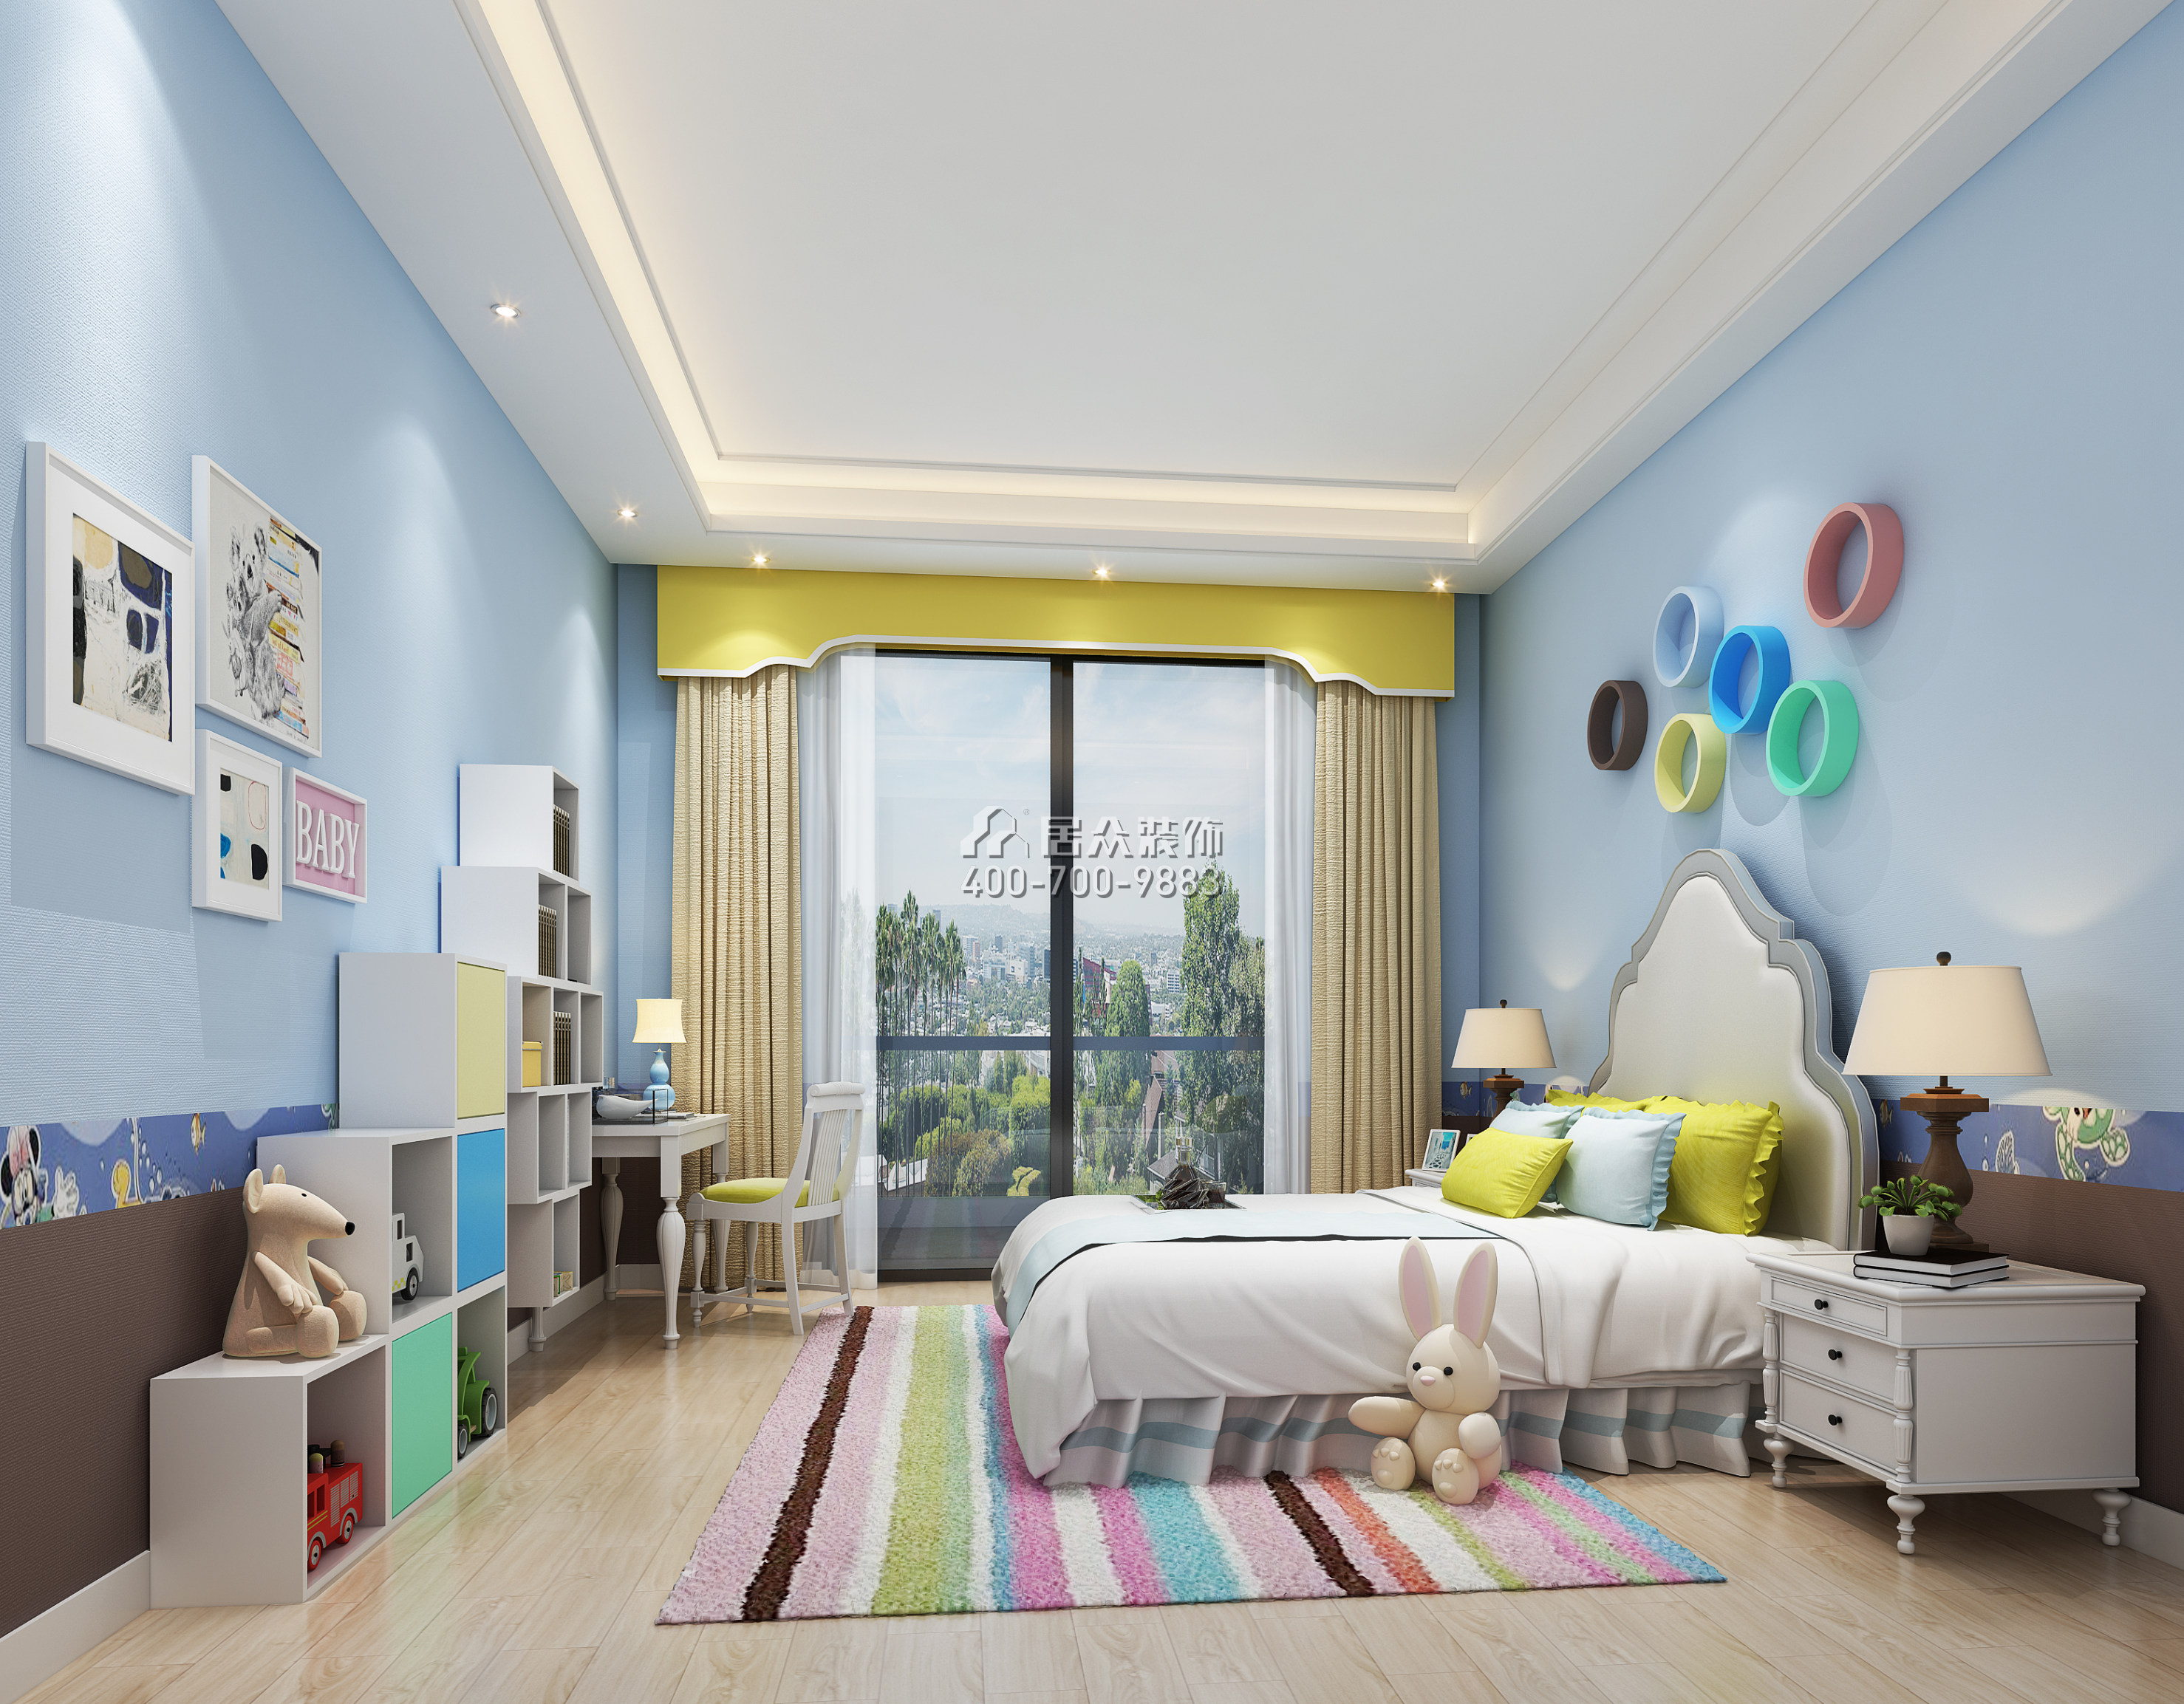 海逸豪庭御峰321平方米中式风格别墅户型卧室装修效果图